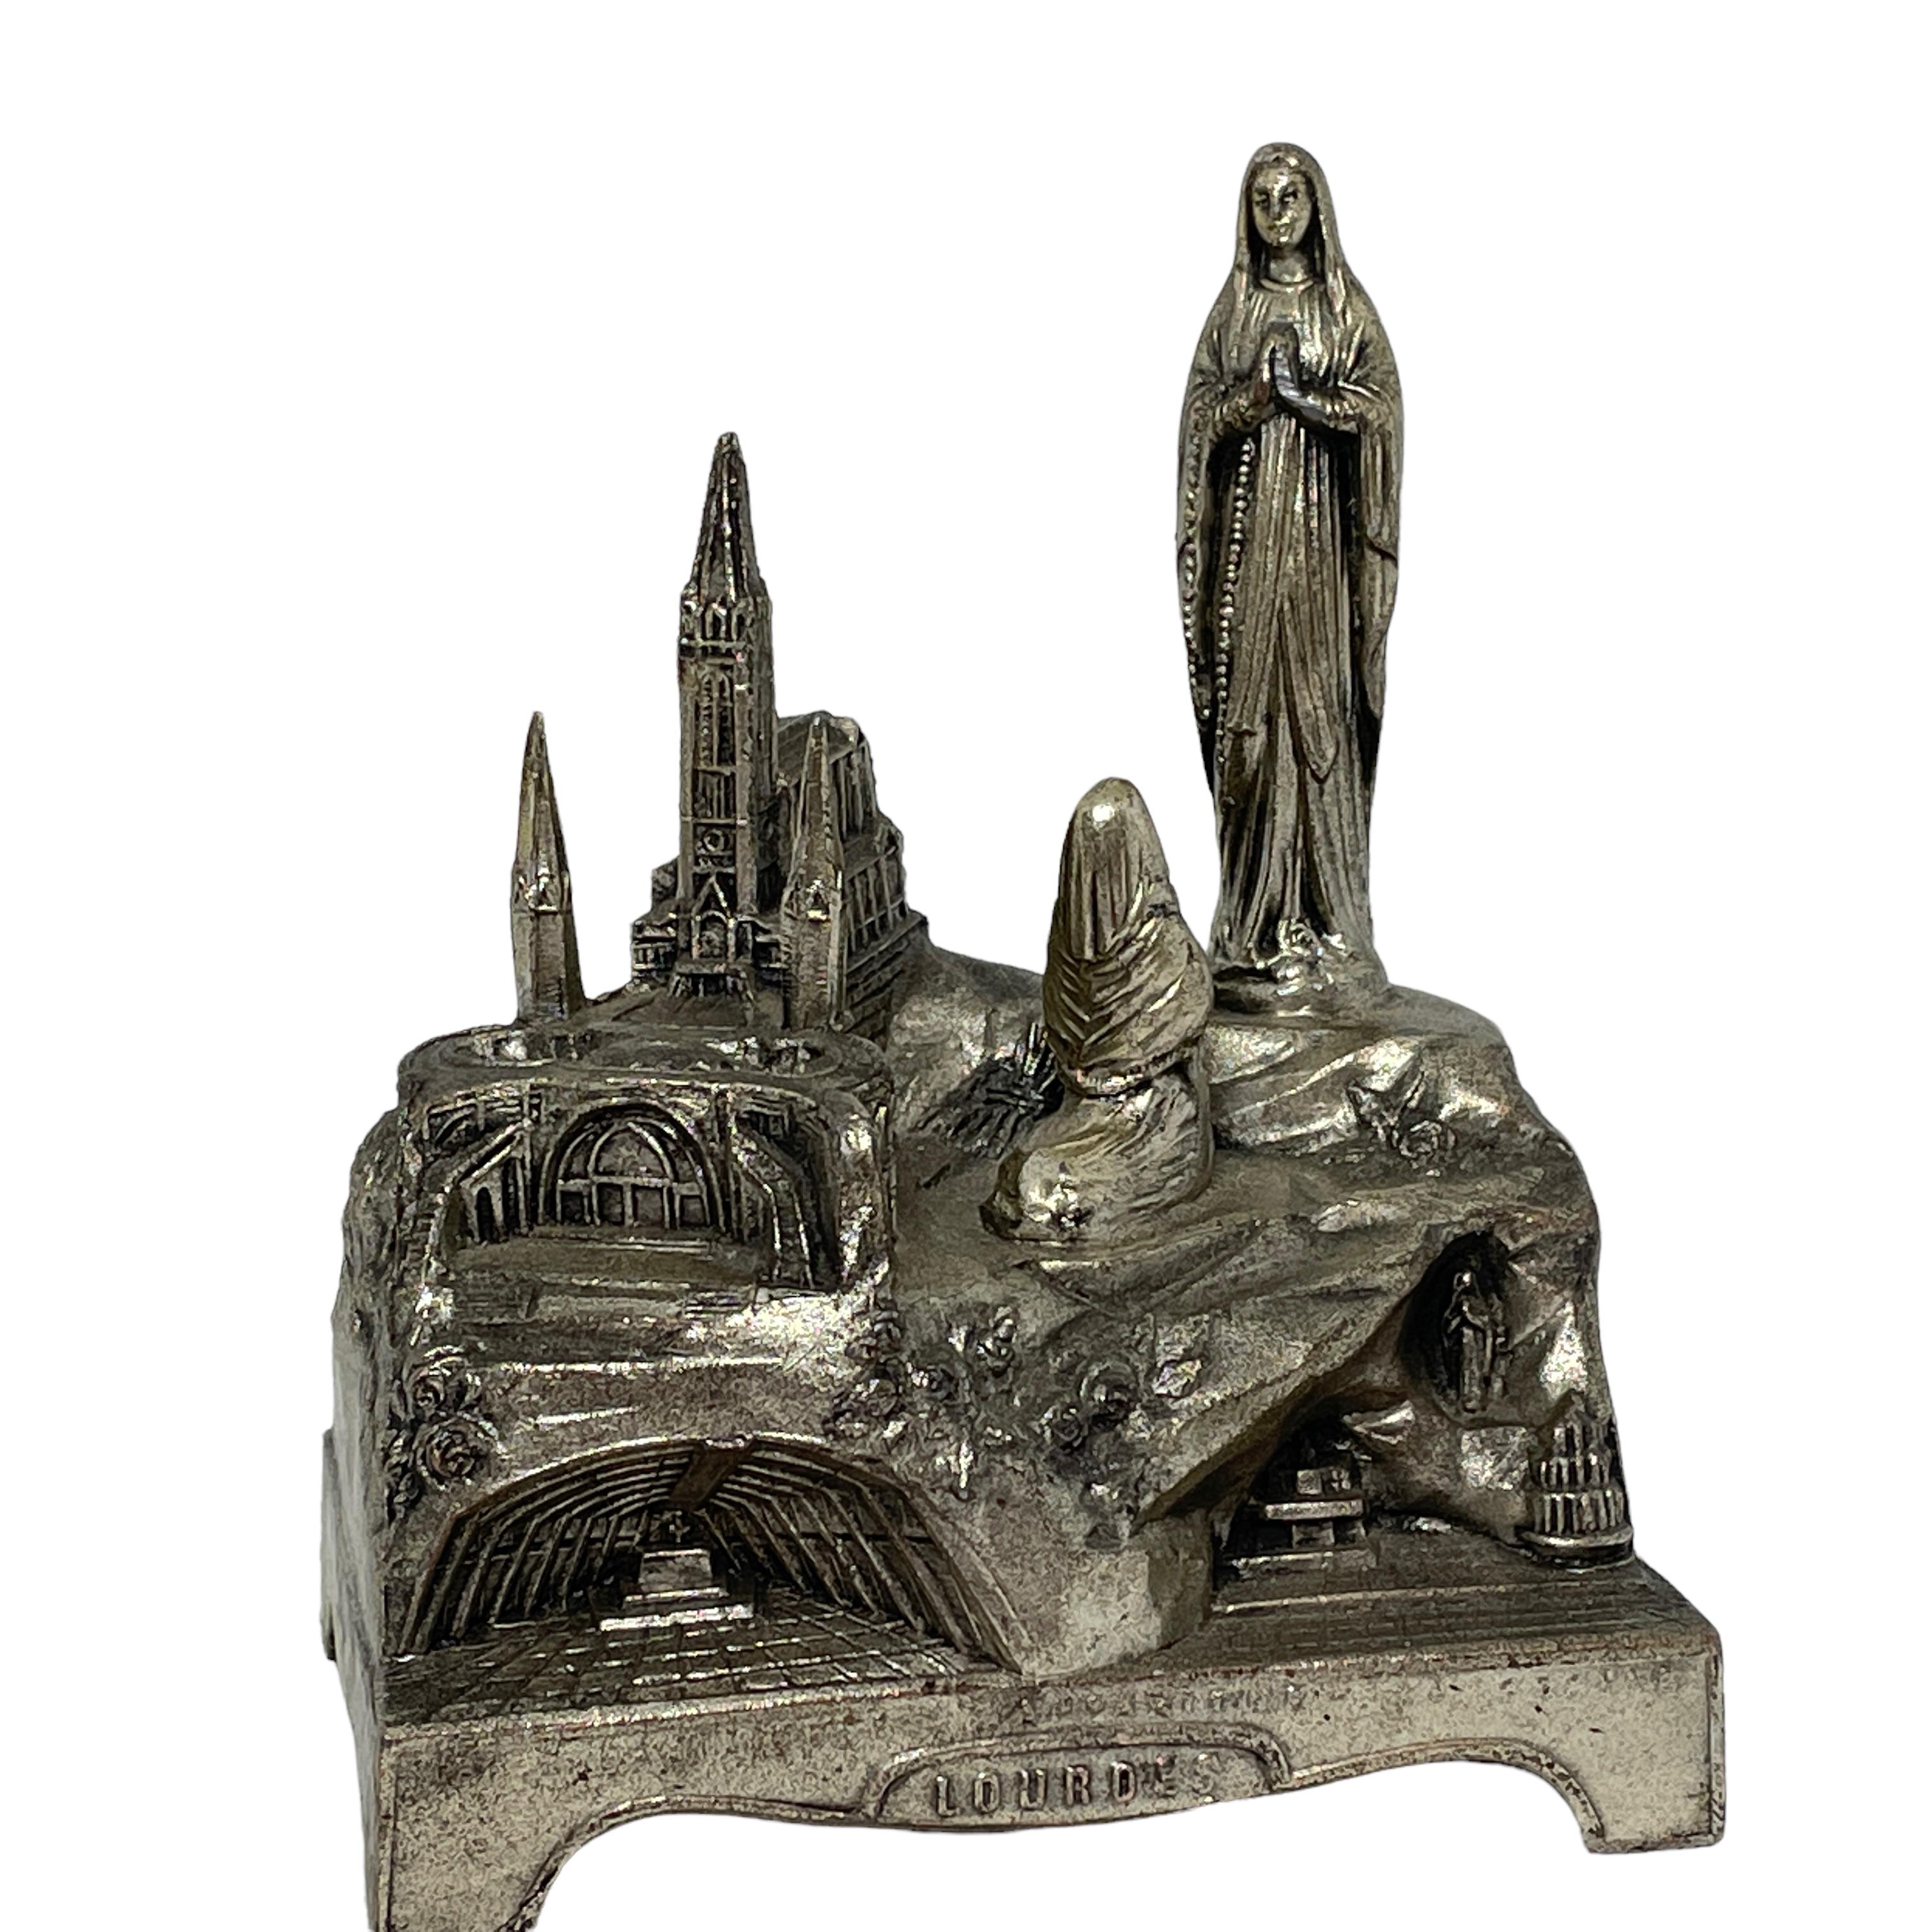 Diese alte versilberte Spieldose war ein Souvenir von einer Pilgerreise zur berühmten Stadt Lourdes in Frankreich. Er ist aus Metall und Holz gefertigt. Die Spieldose spielt eine schöne Melodie und ist in gutem Zustand. Eine schöne Ergänzung für